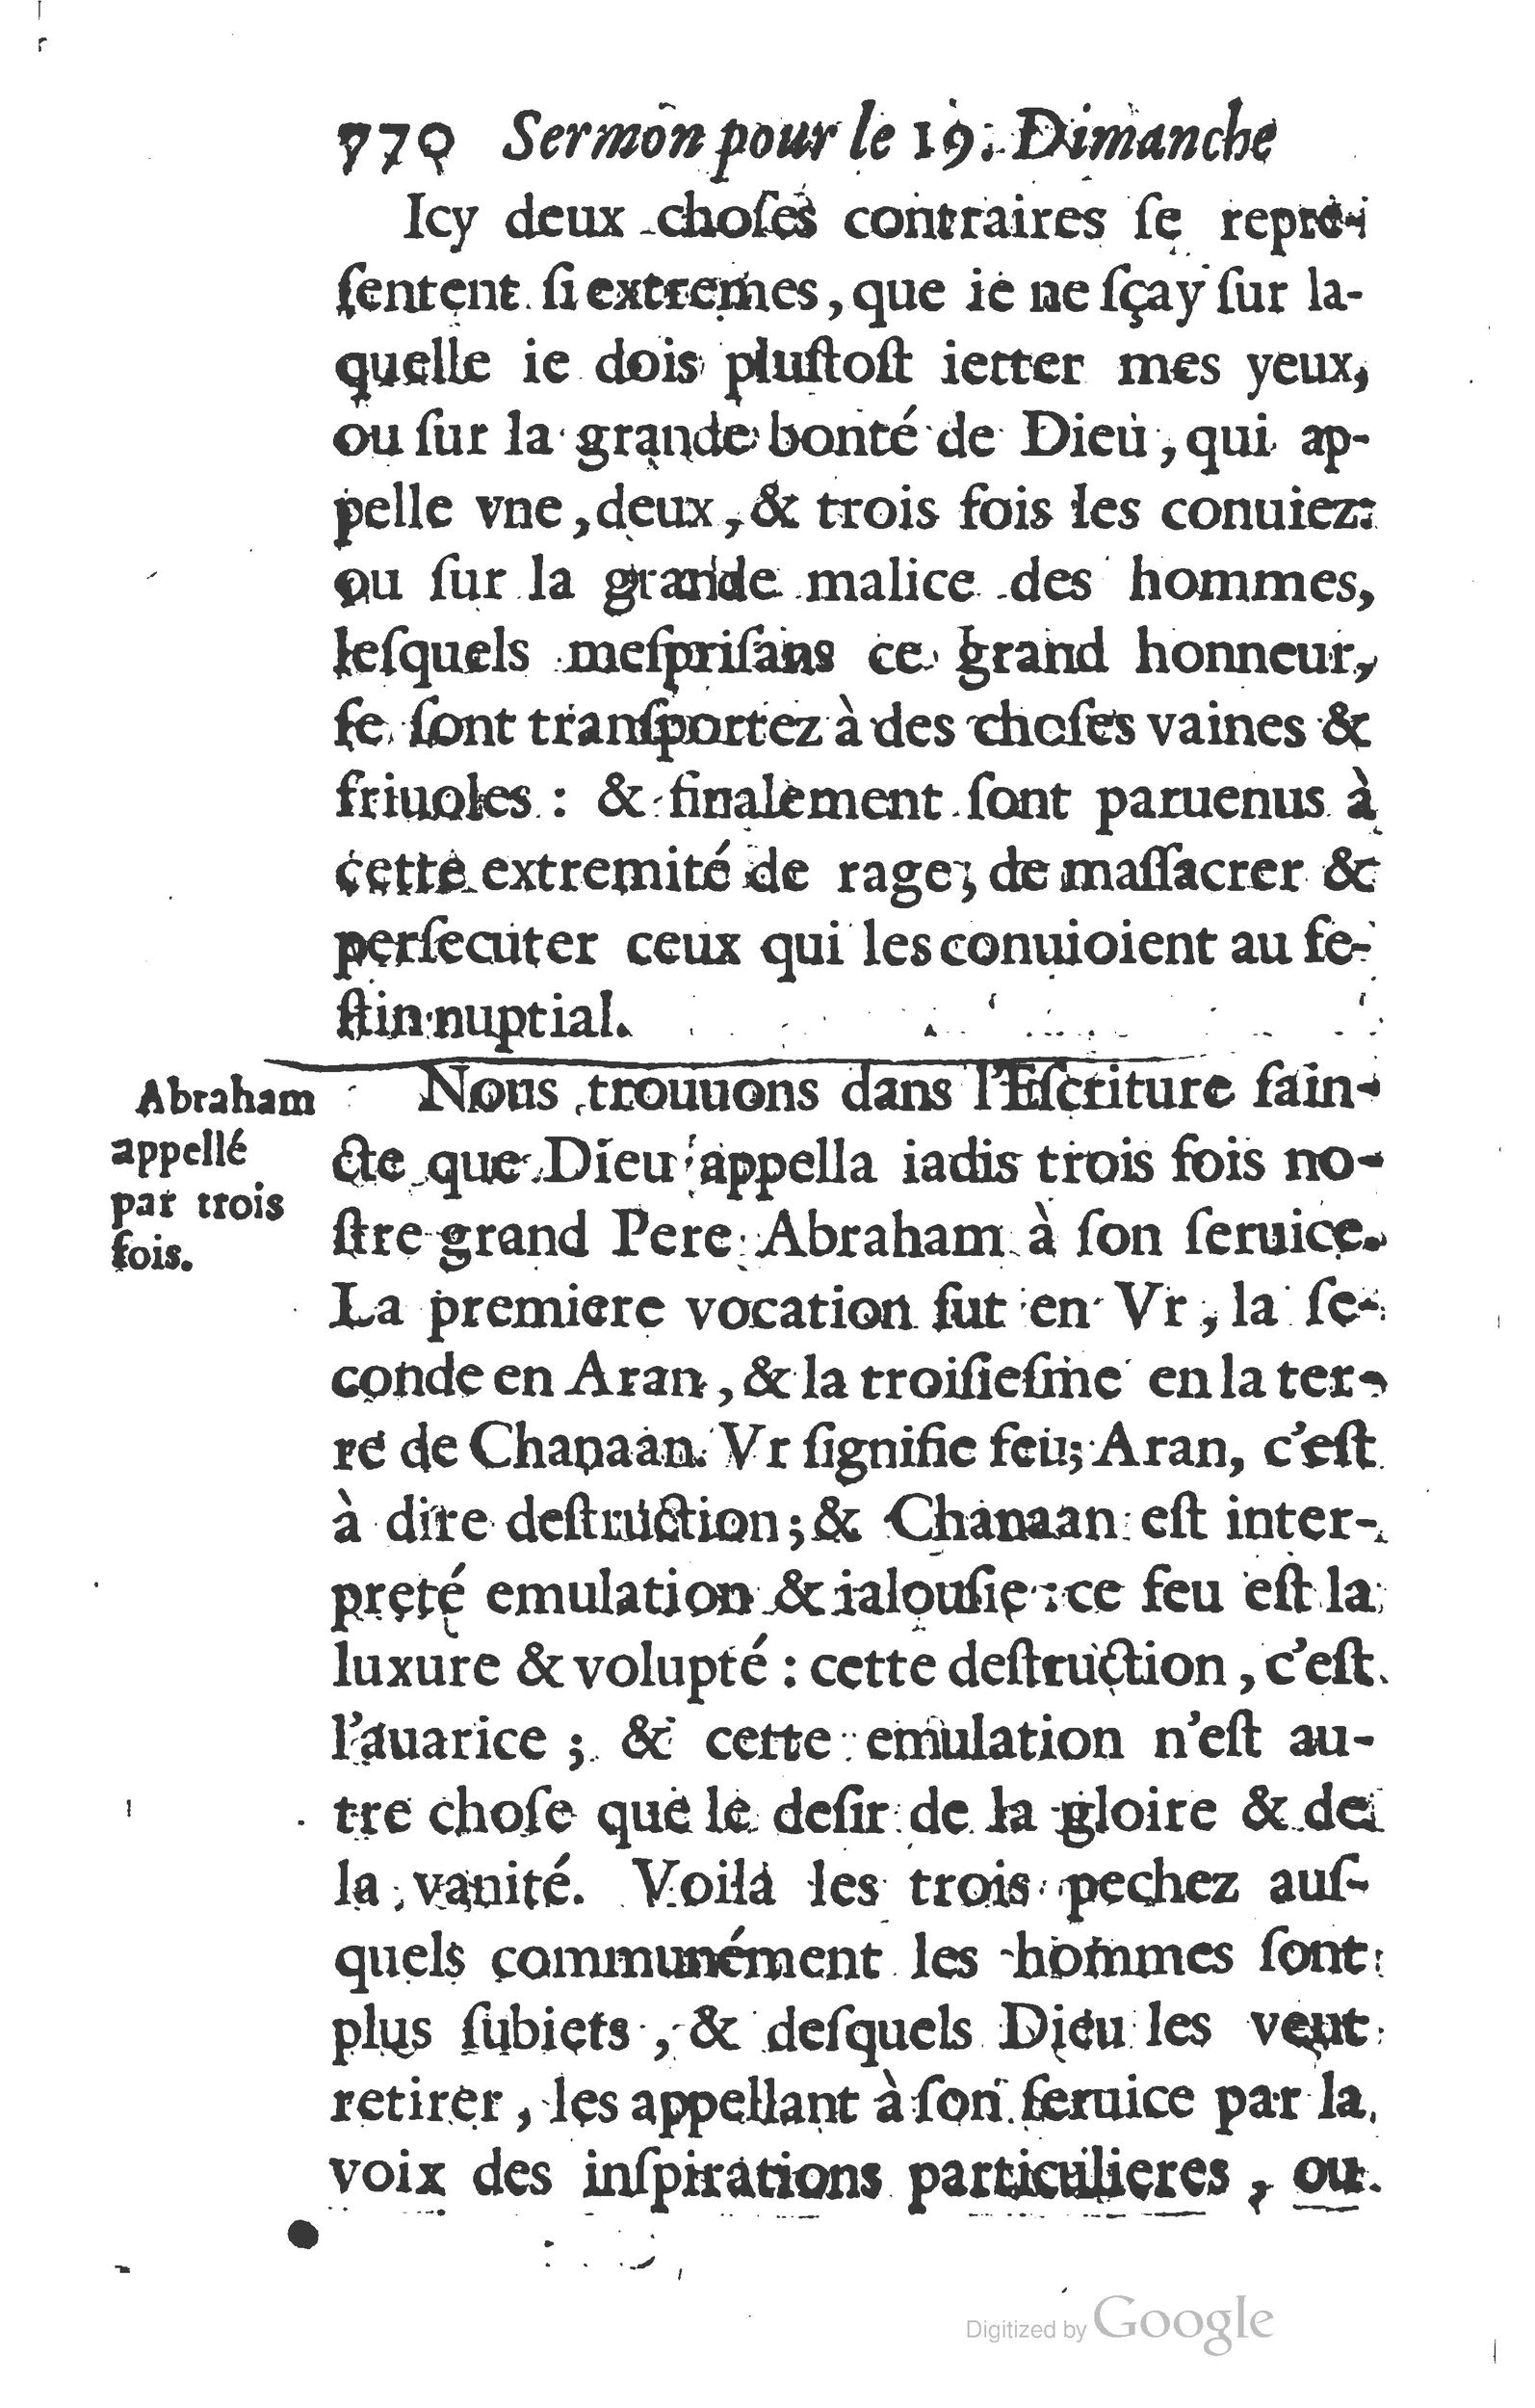 1629 Sermons ou trésor de la piété chrétienne_Page_793.jpg